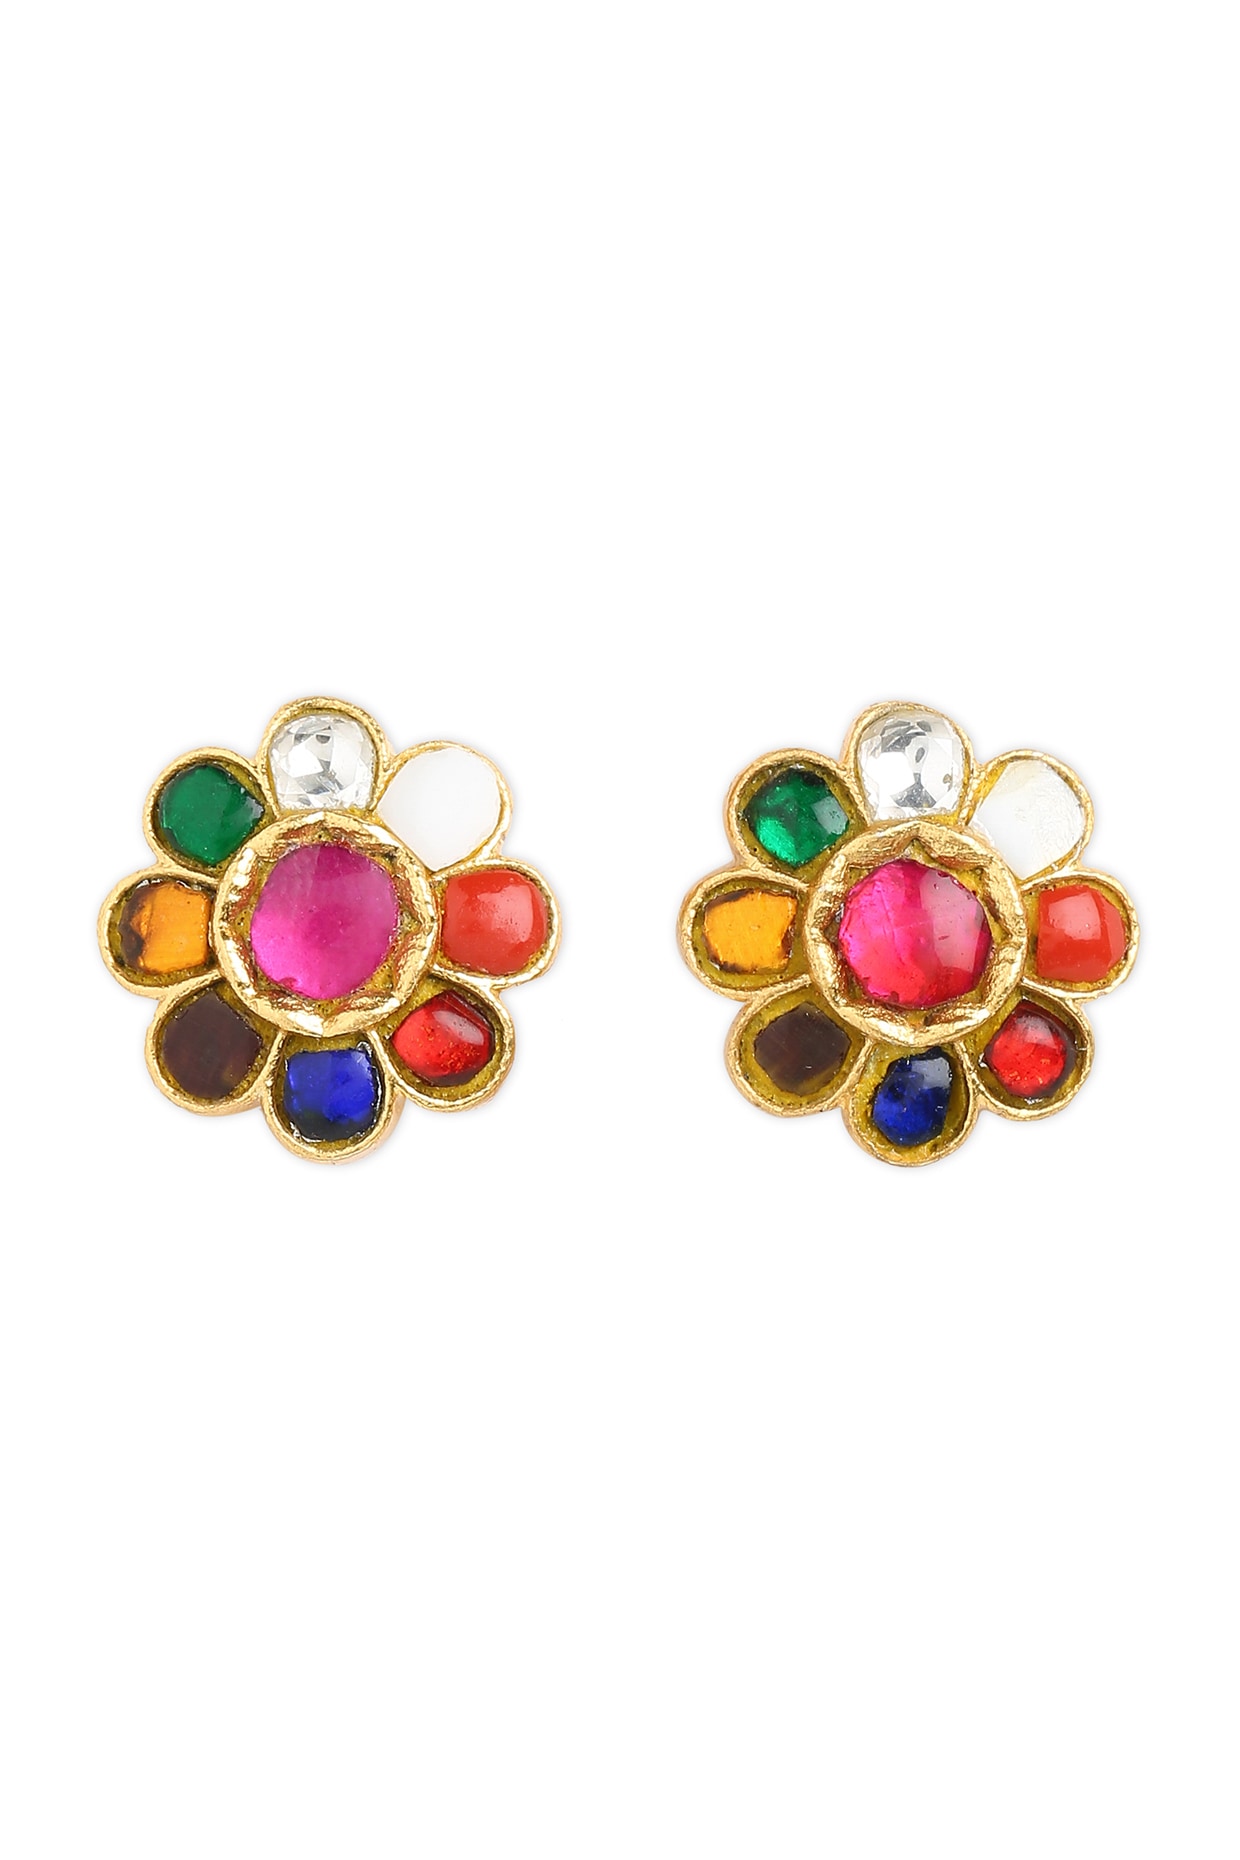 Navratna Polki Jadau Earrings With Carved Ruby Drops  Jaipur Jewels